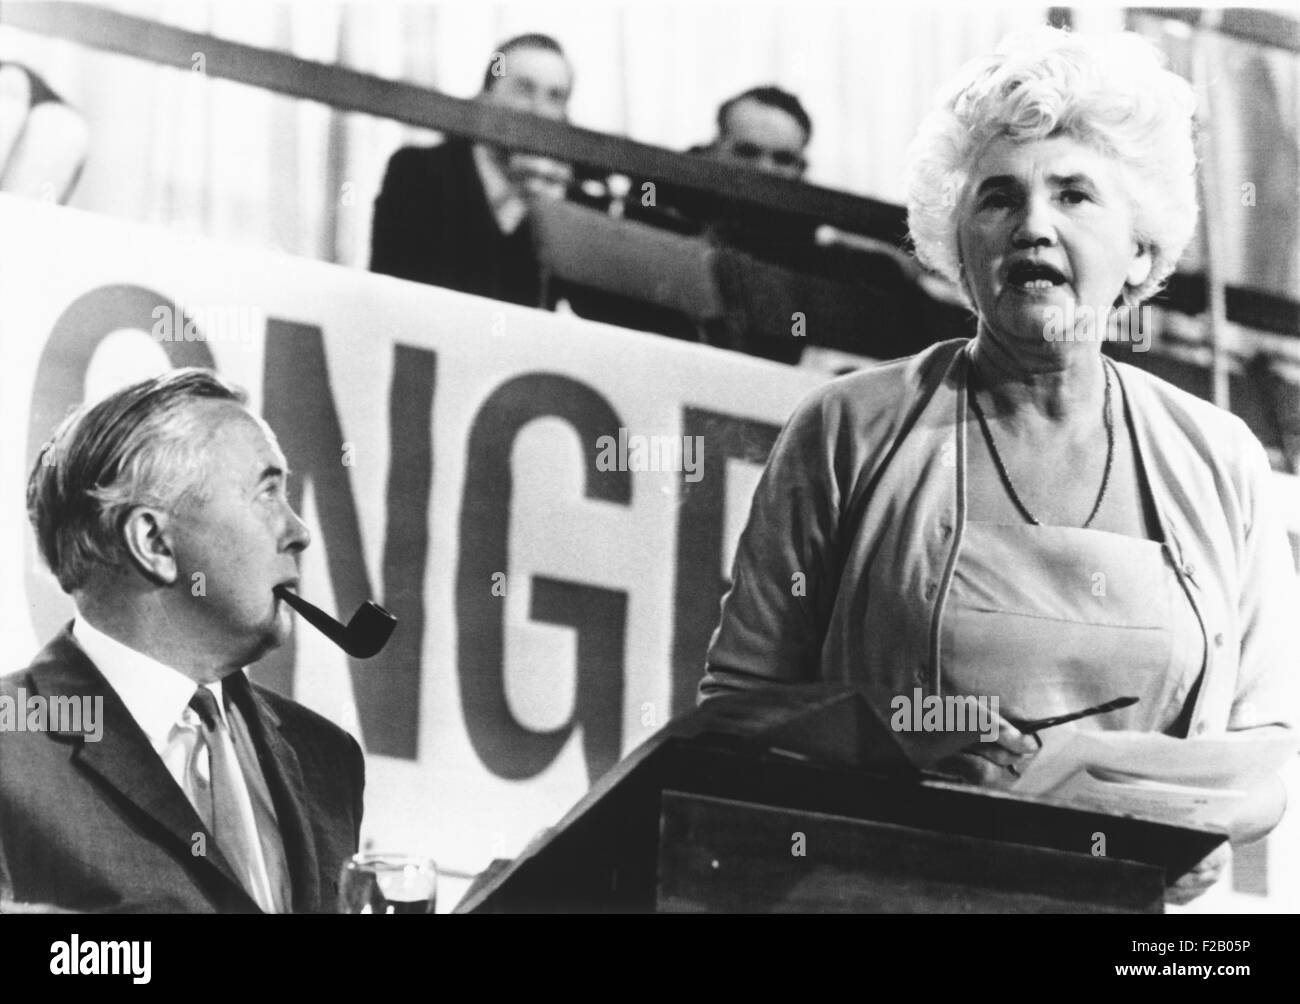 Sessione di apertura del partito laburista britannico conference, Ottobre 3, 1966. Il primo ministro Harold Wilson ascolta Jenny Lee, vedova del famoso Laborite Aneuran Bevan. (CSU 2015 9 692) Foto Stock